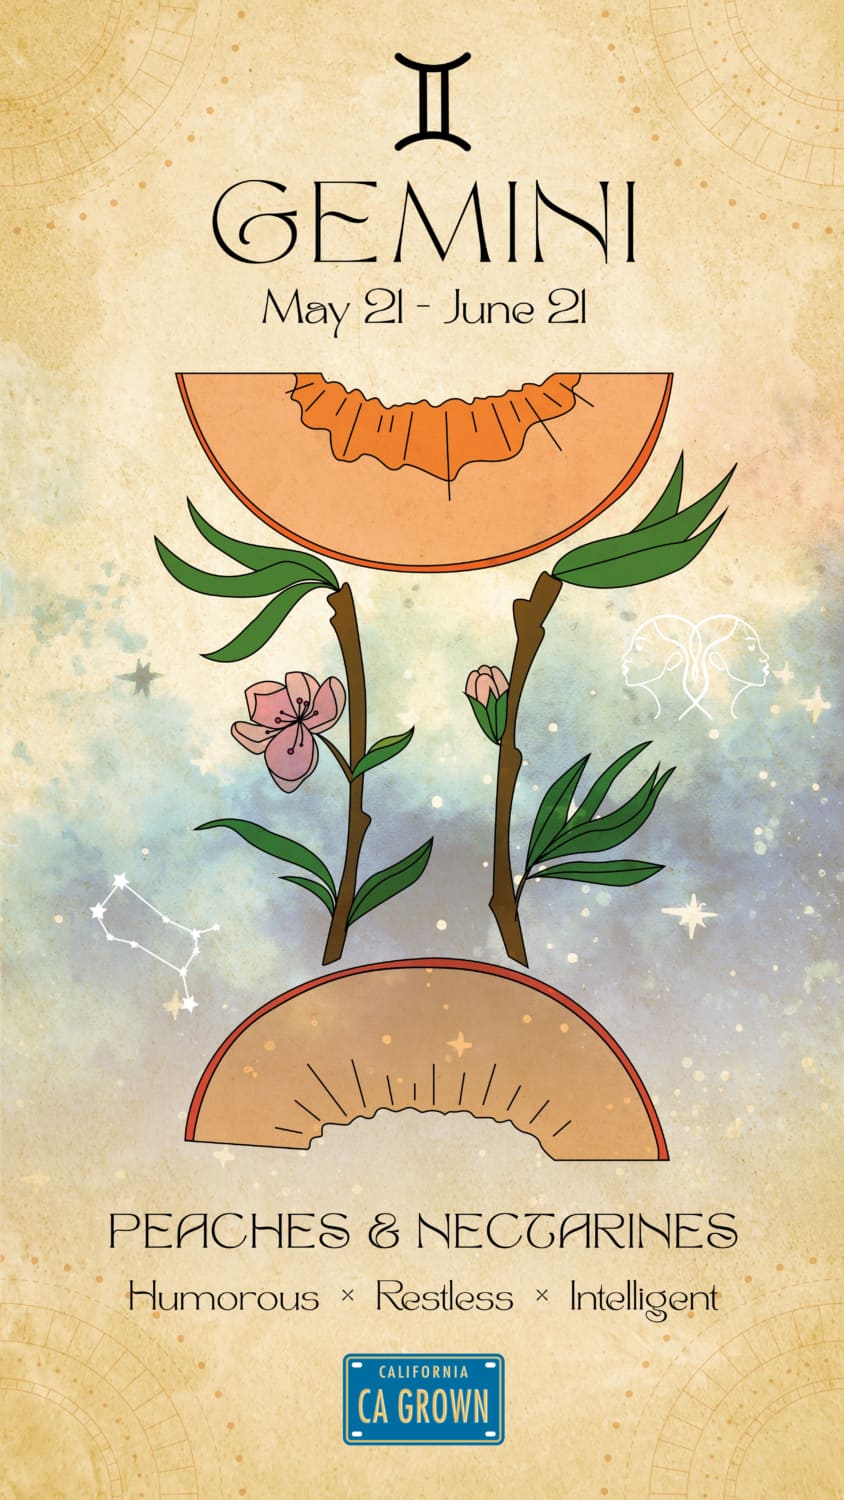 Gemini Crop Zodiac Pair is Peaches and Nectarines